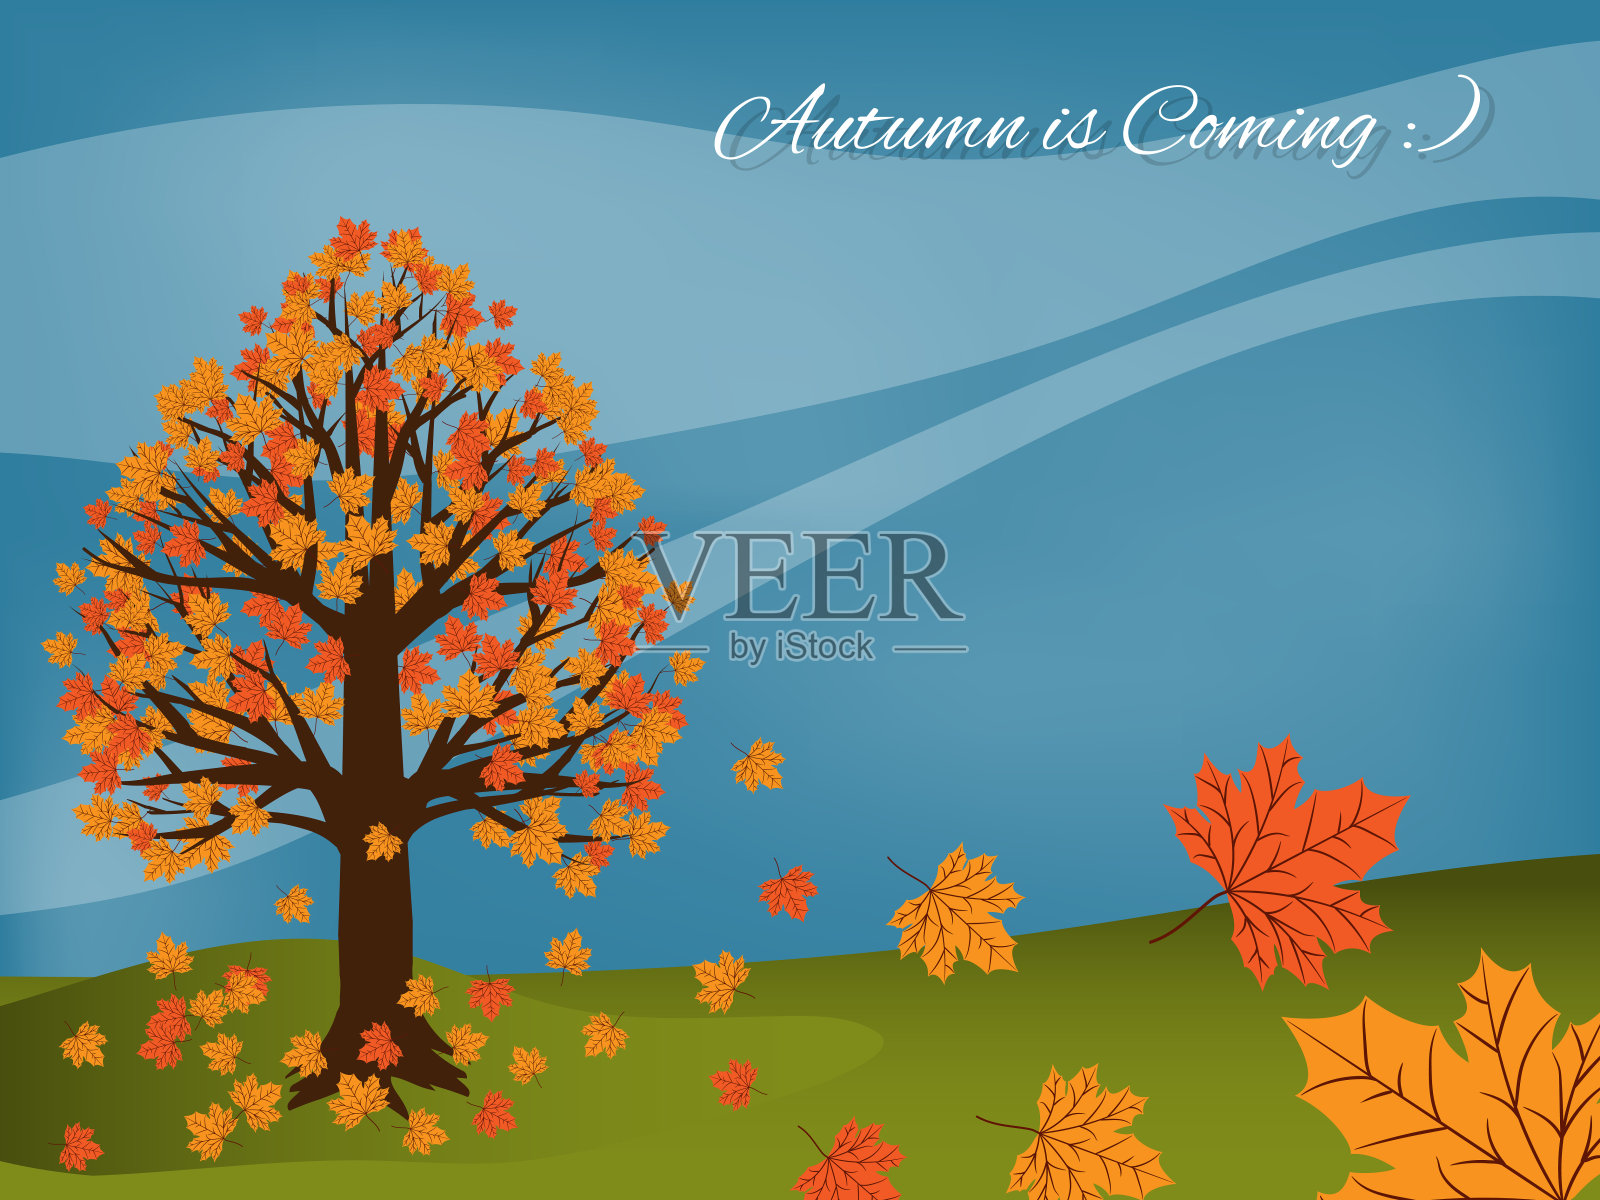 秋天的风景背景与秋天即将来临的文字。矢量插图。插画图片素材